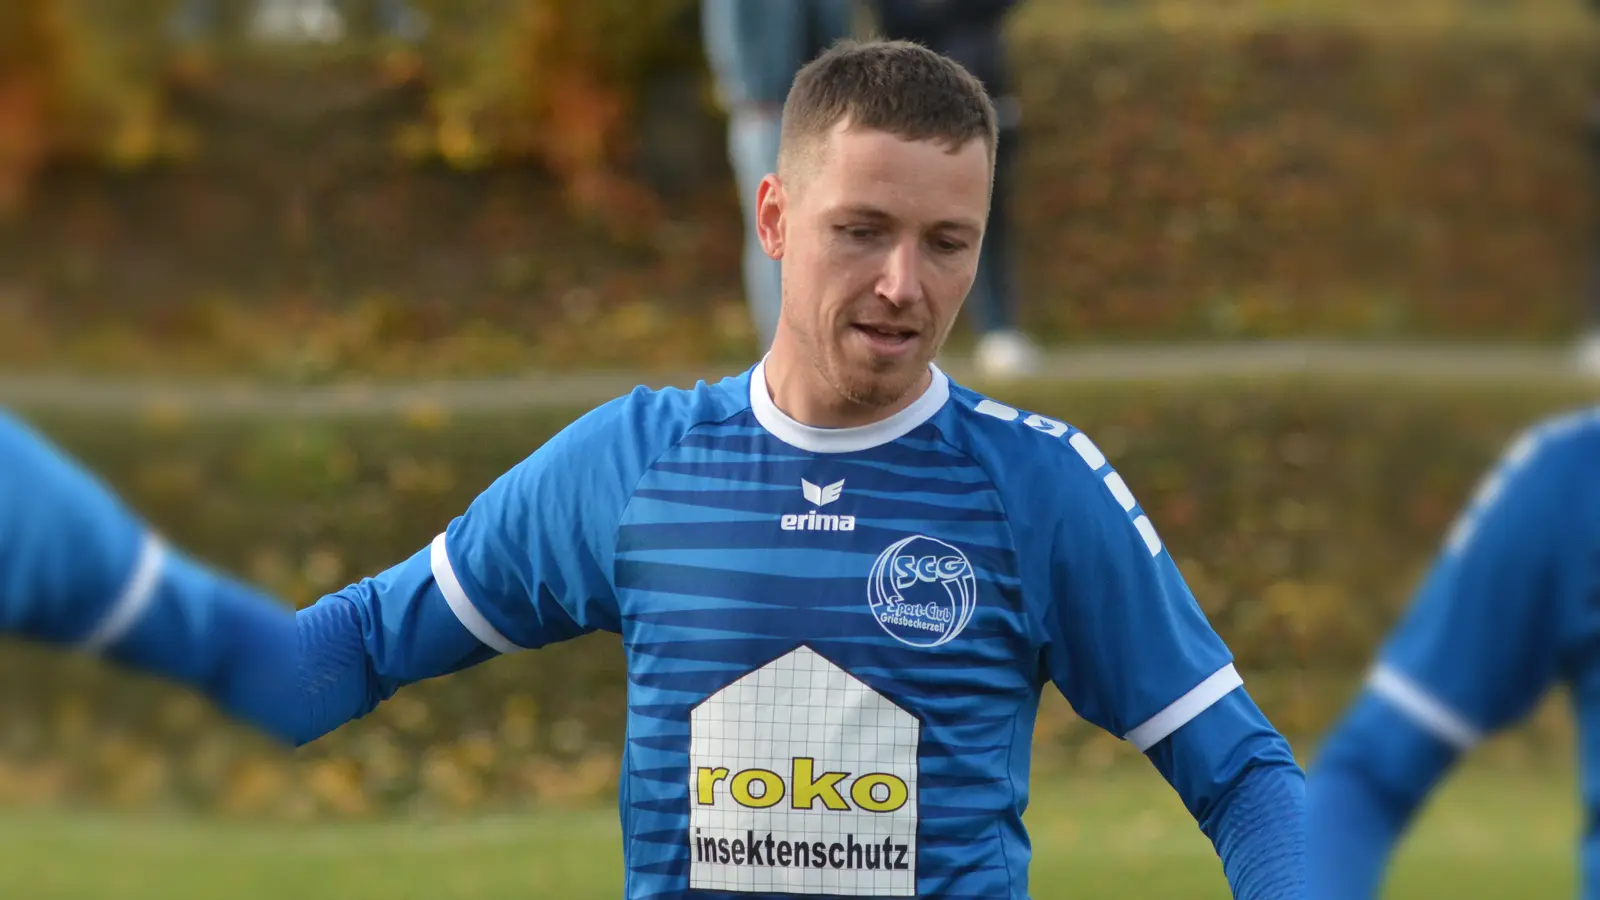 <b>Wird seinen Vertrag</b> nach dieser Saison nicht verlängern: Spielertrainer Matthias Kefer, seit 2019 beim SC Griesbeckerzell. (Foto: David Libossek)